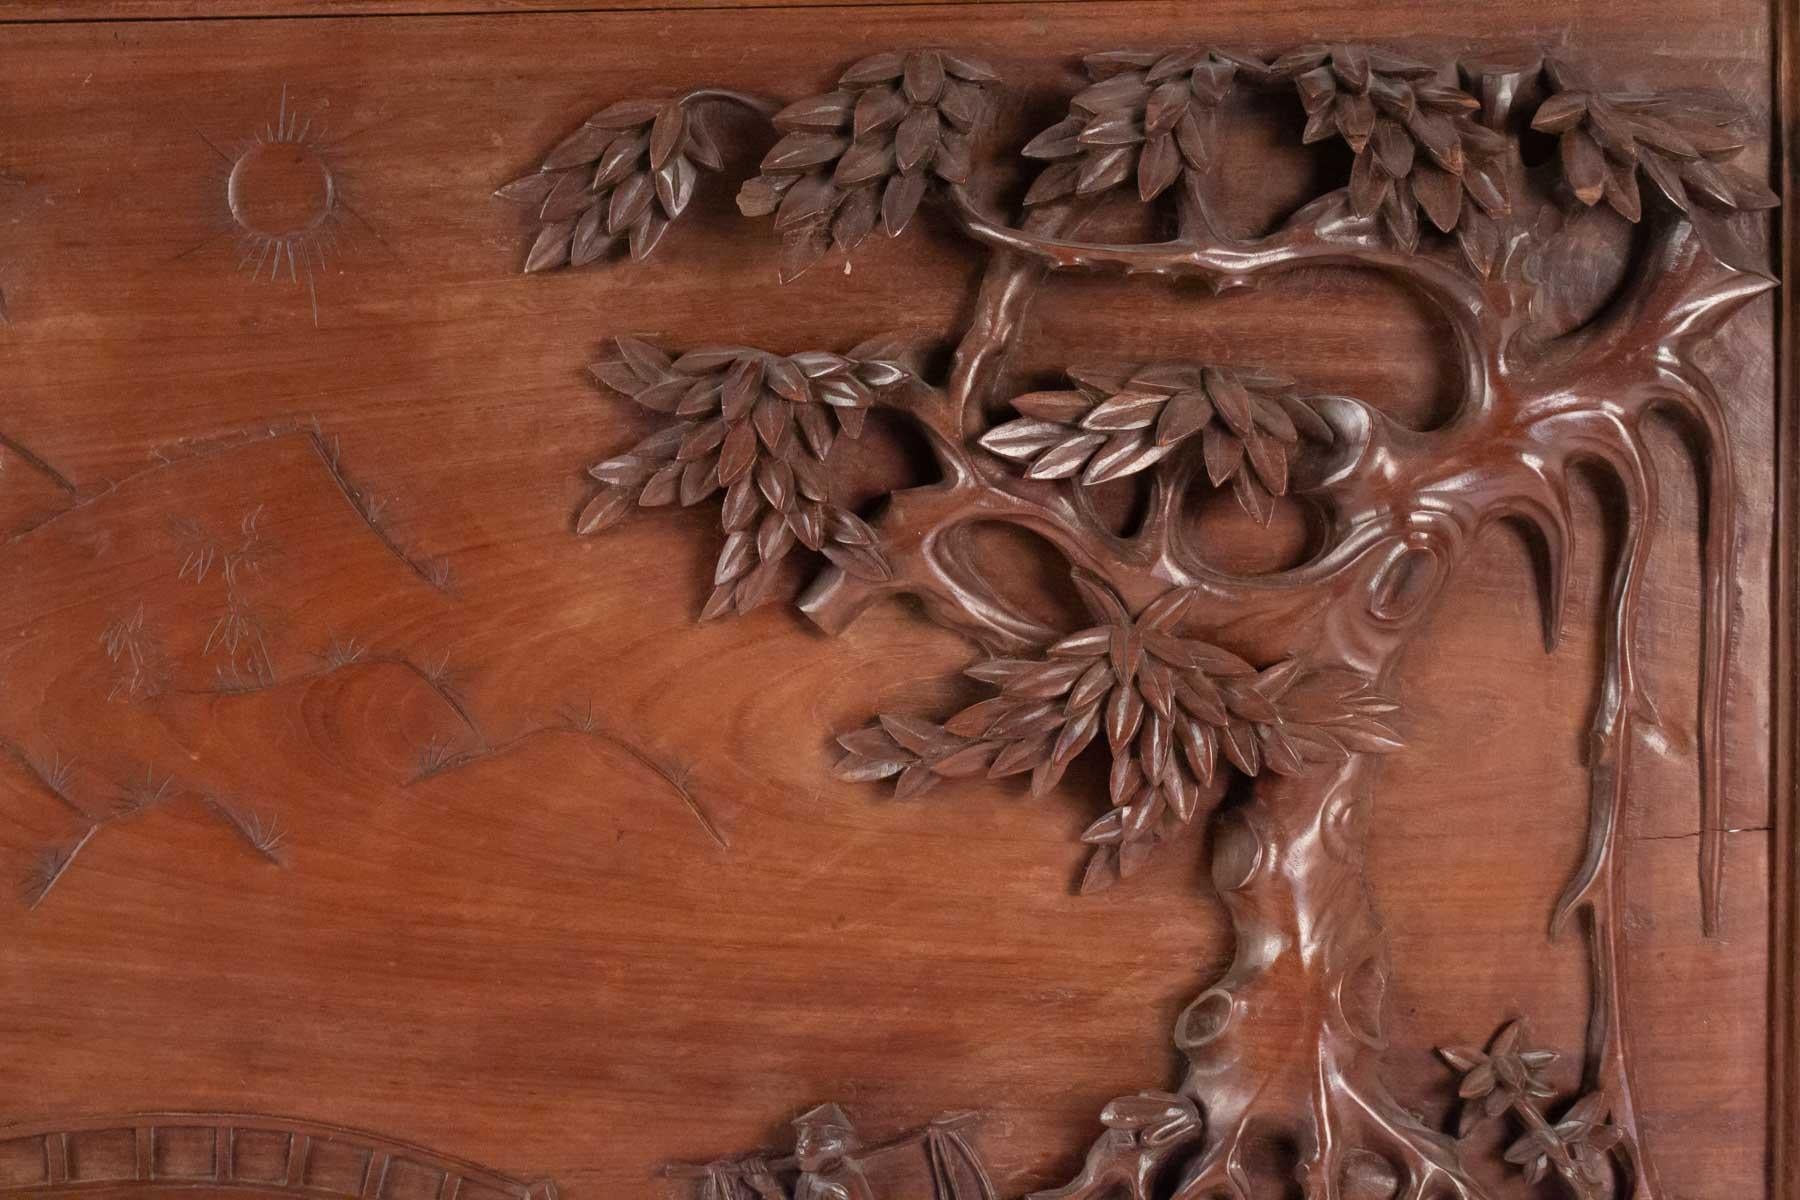 Panneau de bois sculpté, Chine, 20e siècle, Décoration intérieure
Mesures : H 48cm, L 66cm, L 3cm.